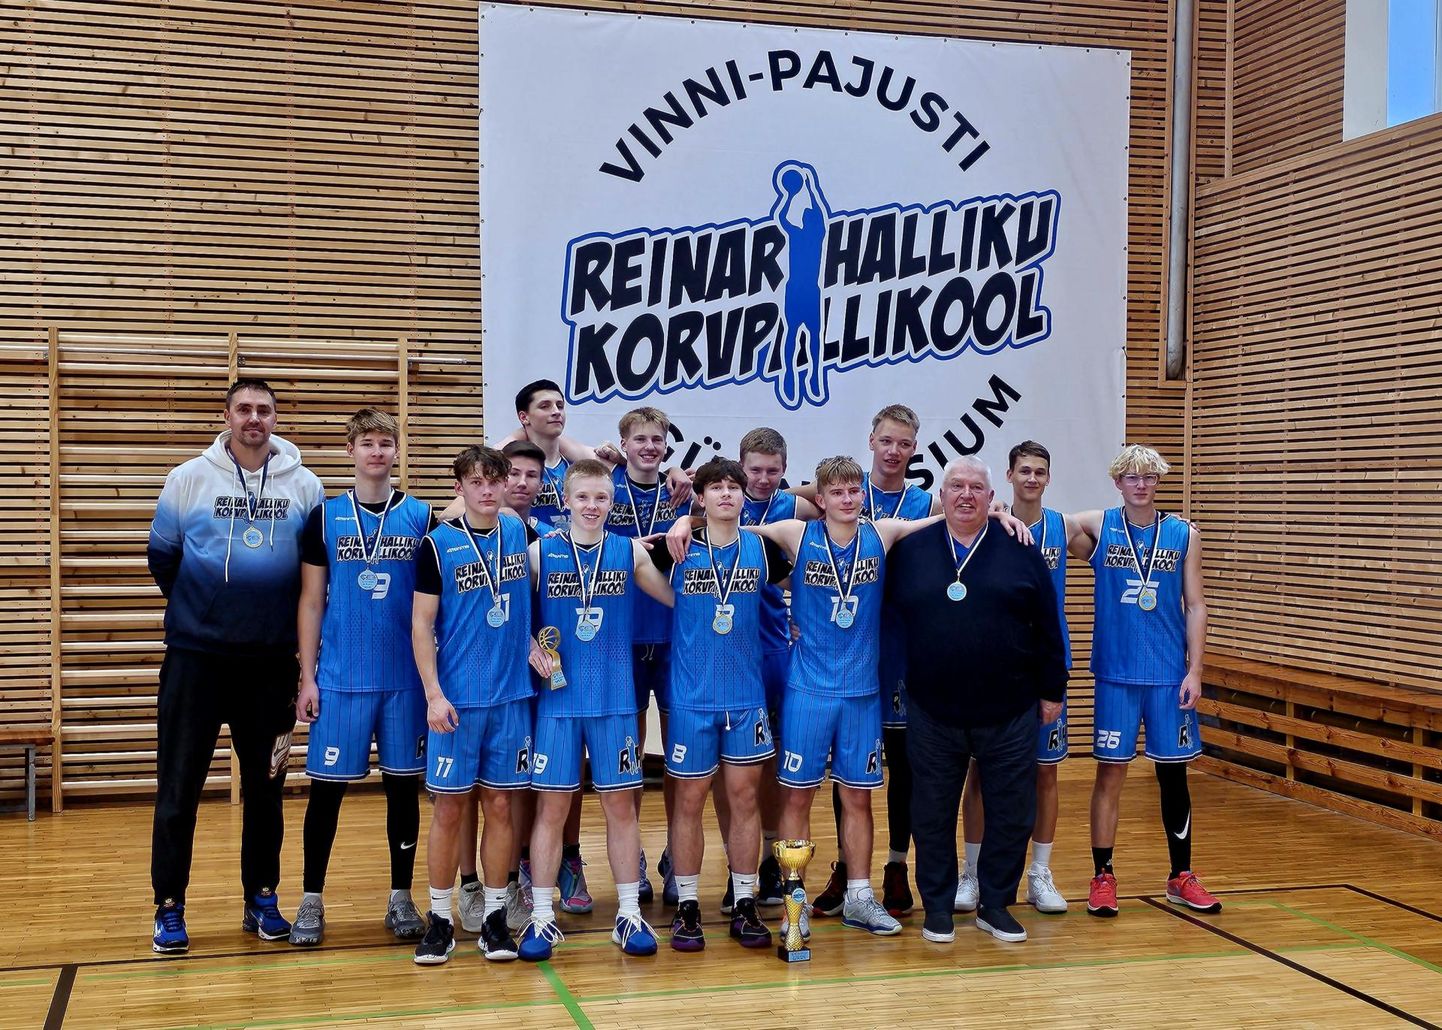 Reinar Halliku Korvpallikool/Vinni Vald alustas Euroopa noorte korvpalliliigas kodusaalis peetud alagrupiturniiri nelja võiduga.